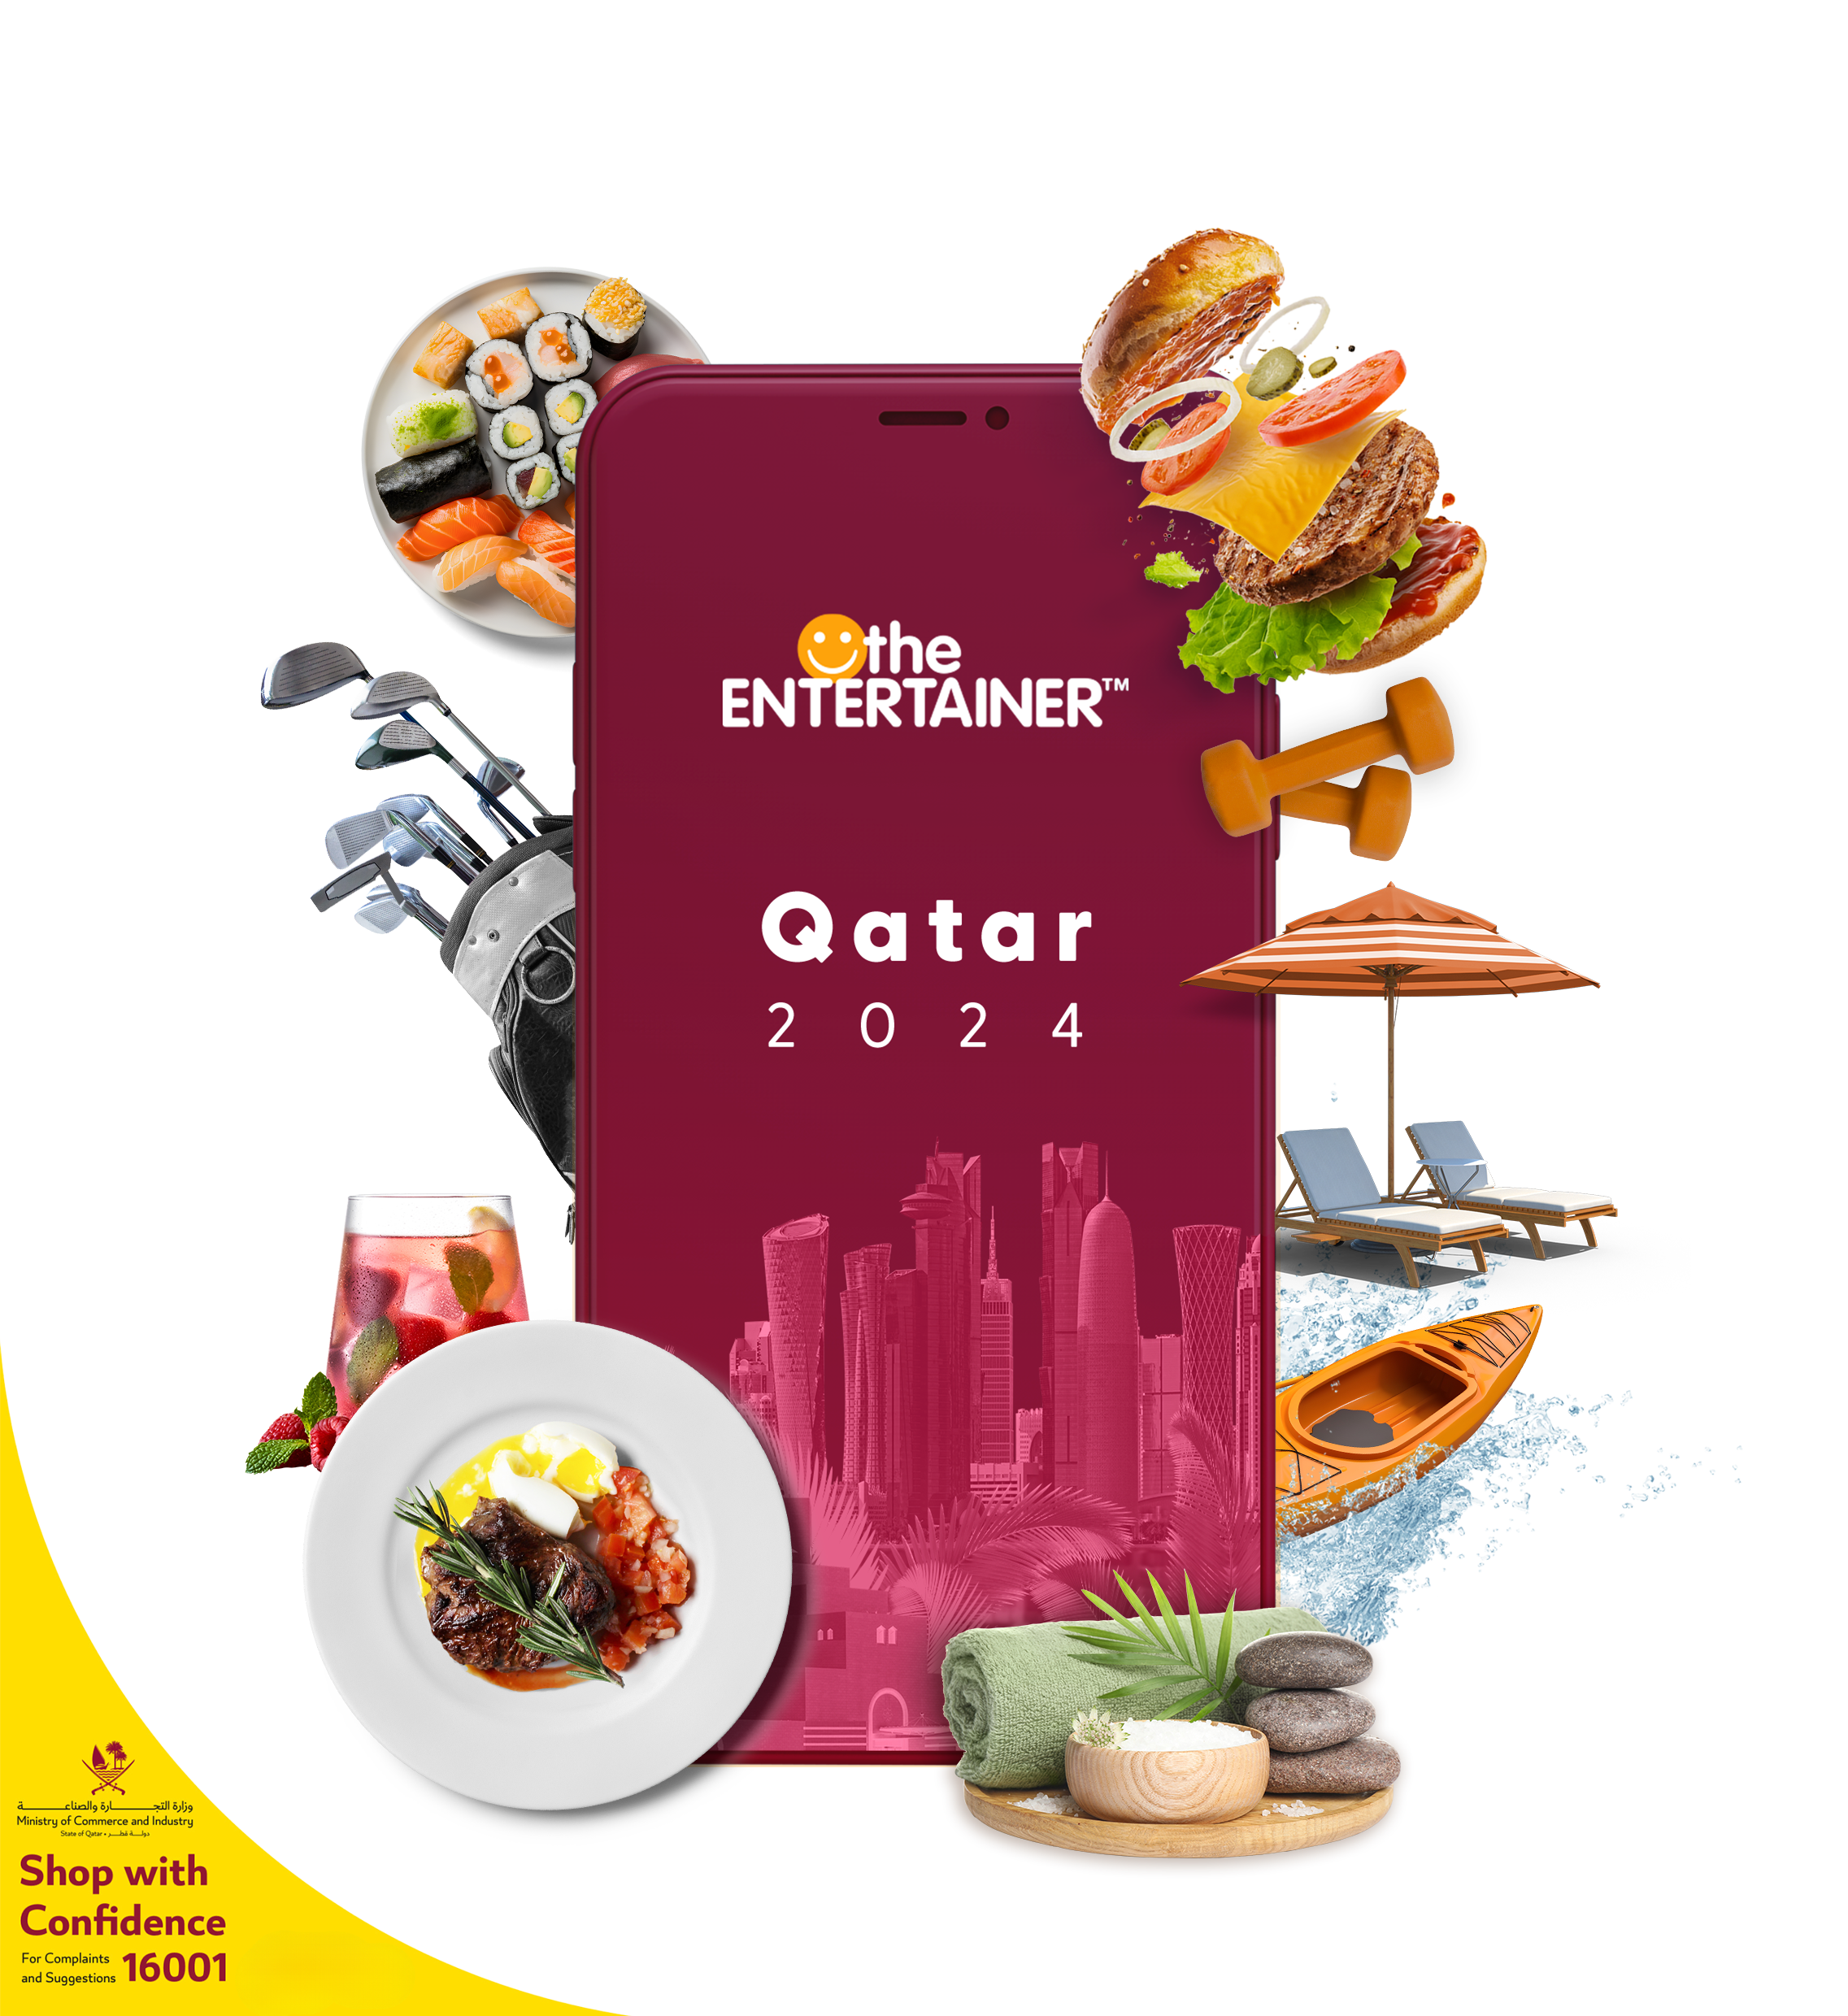 ENTERTAINER Qatar 2024